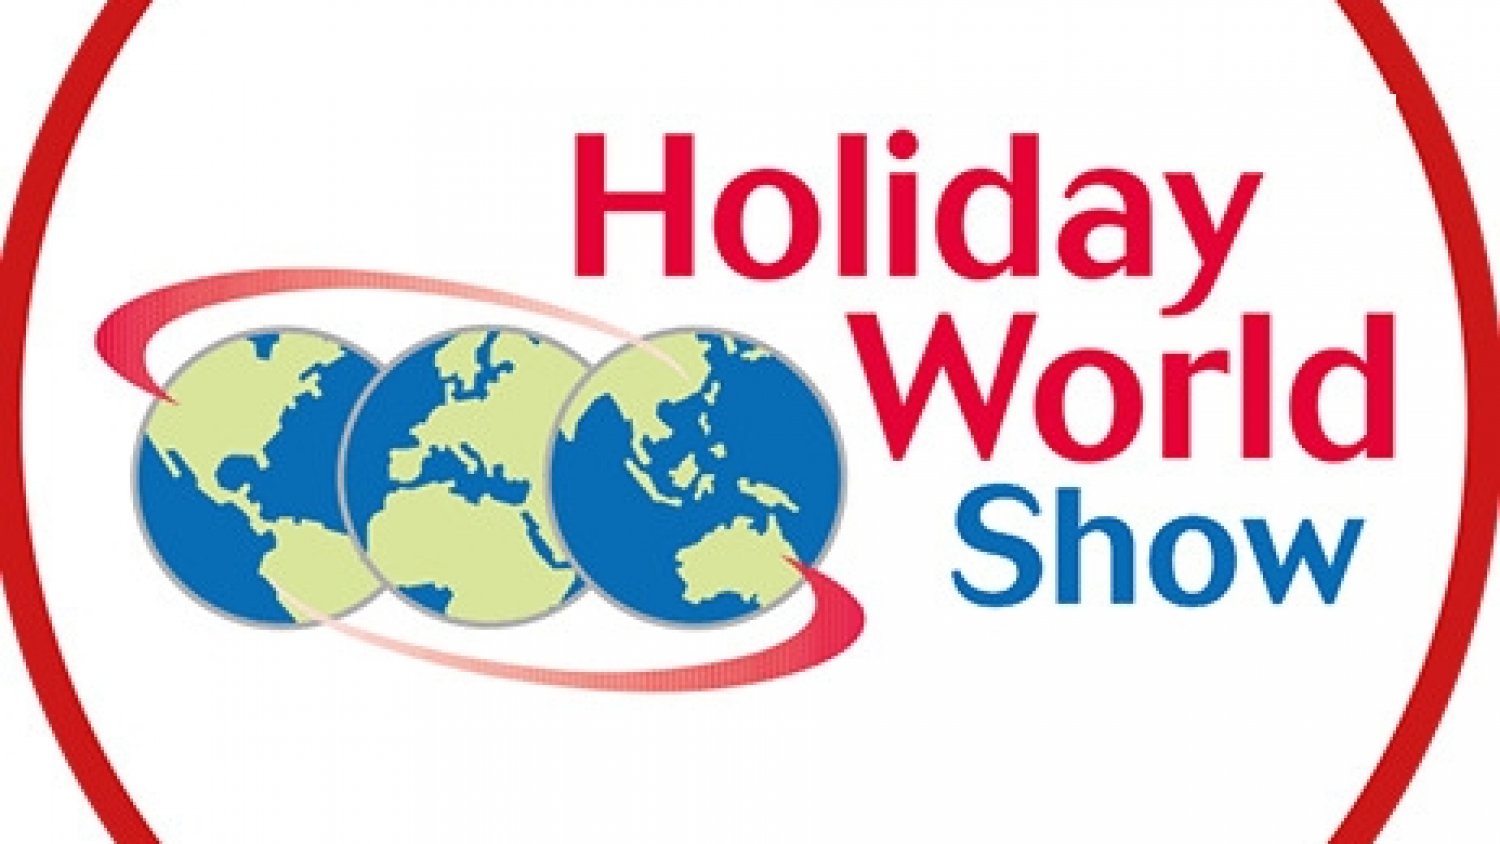 Andalucía busca afianzar su posicionamiento en el mercado irlandés en Holiday World Show